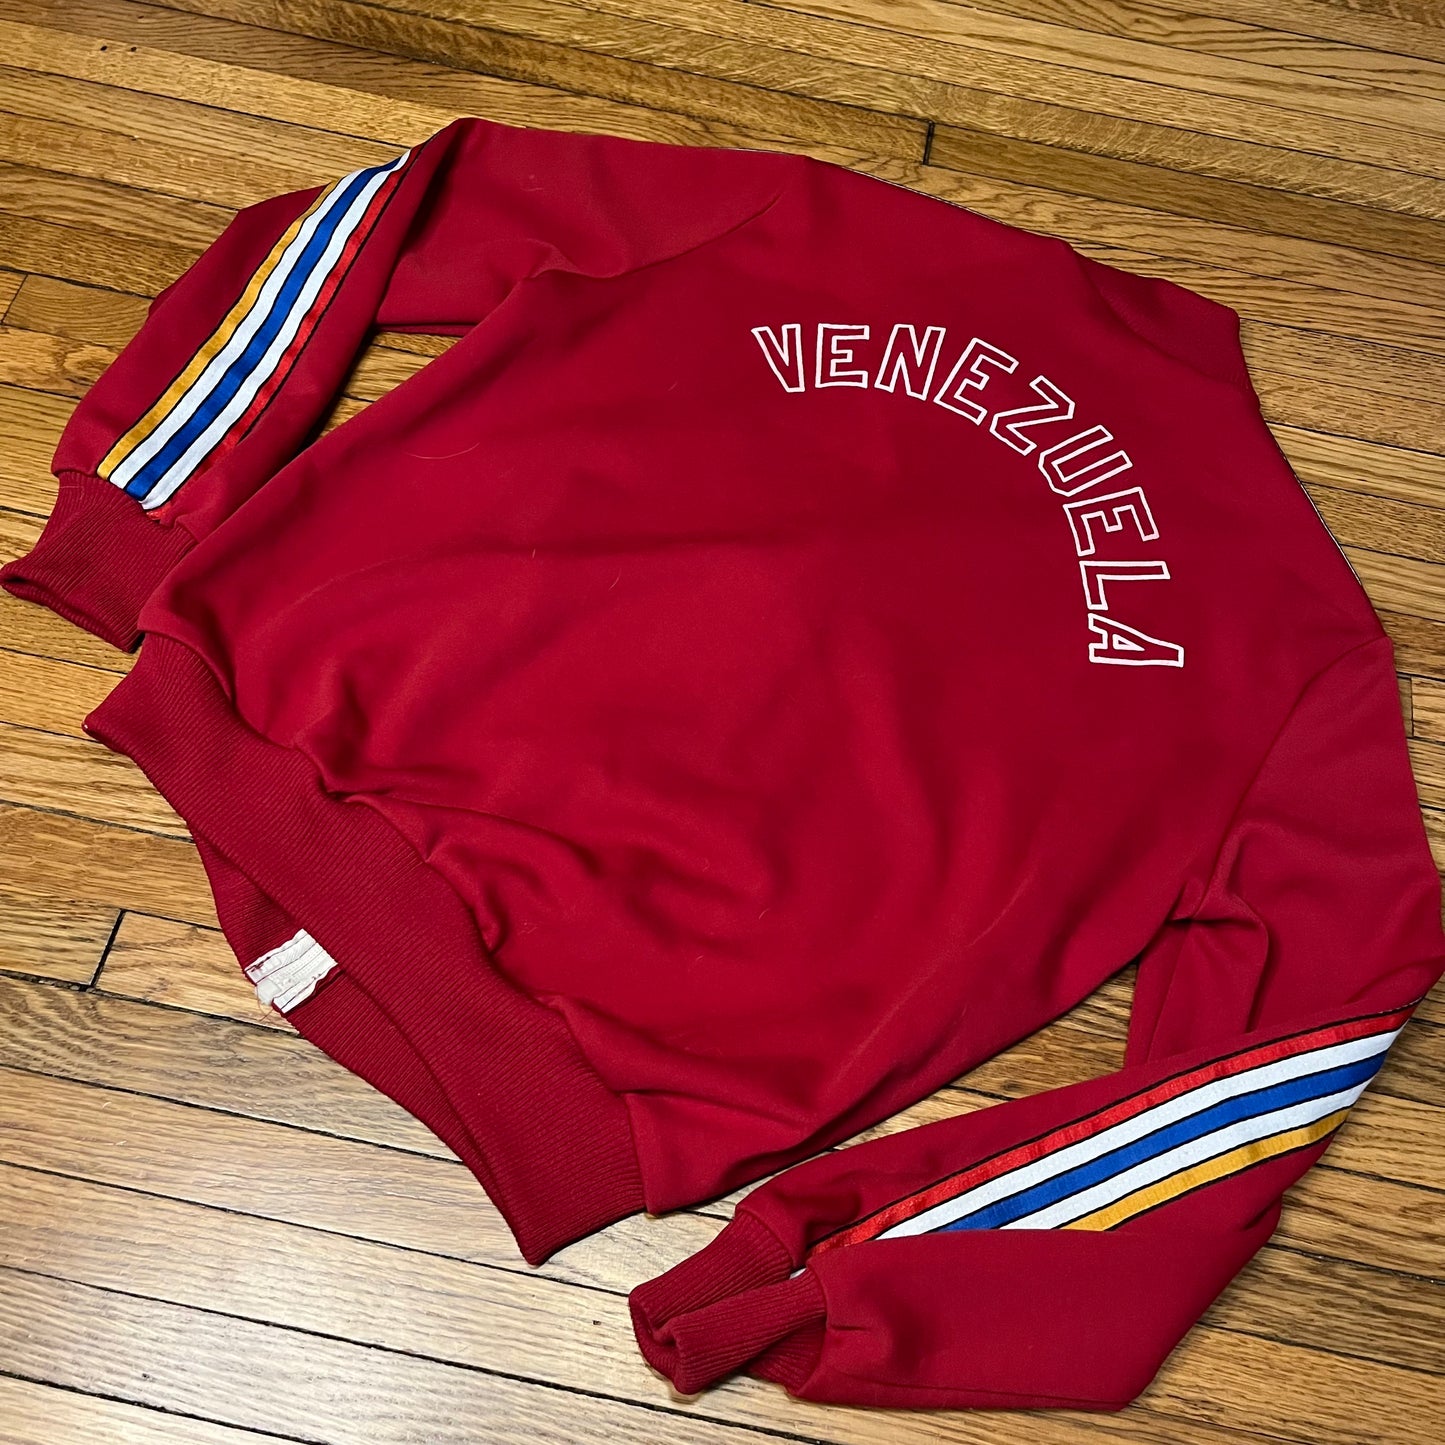 80’s Adidas Olympic Track-Jacket